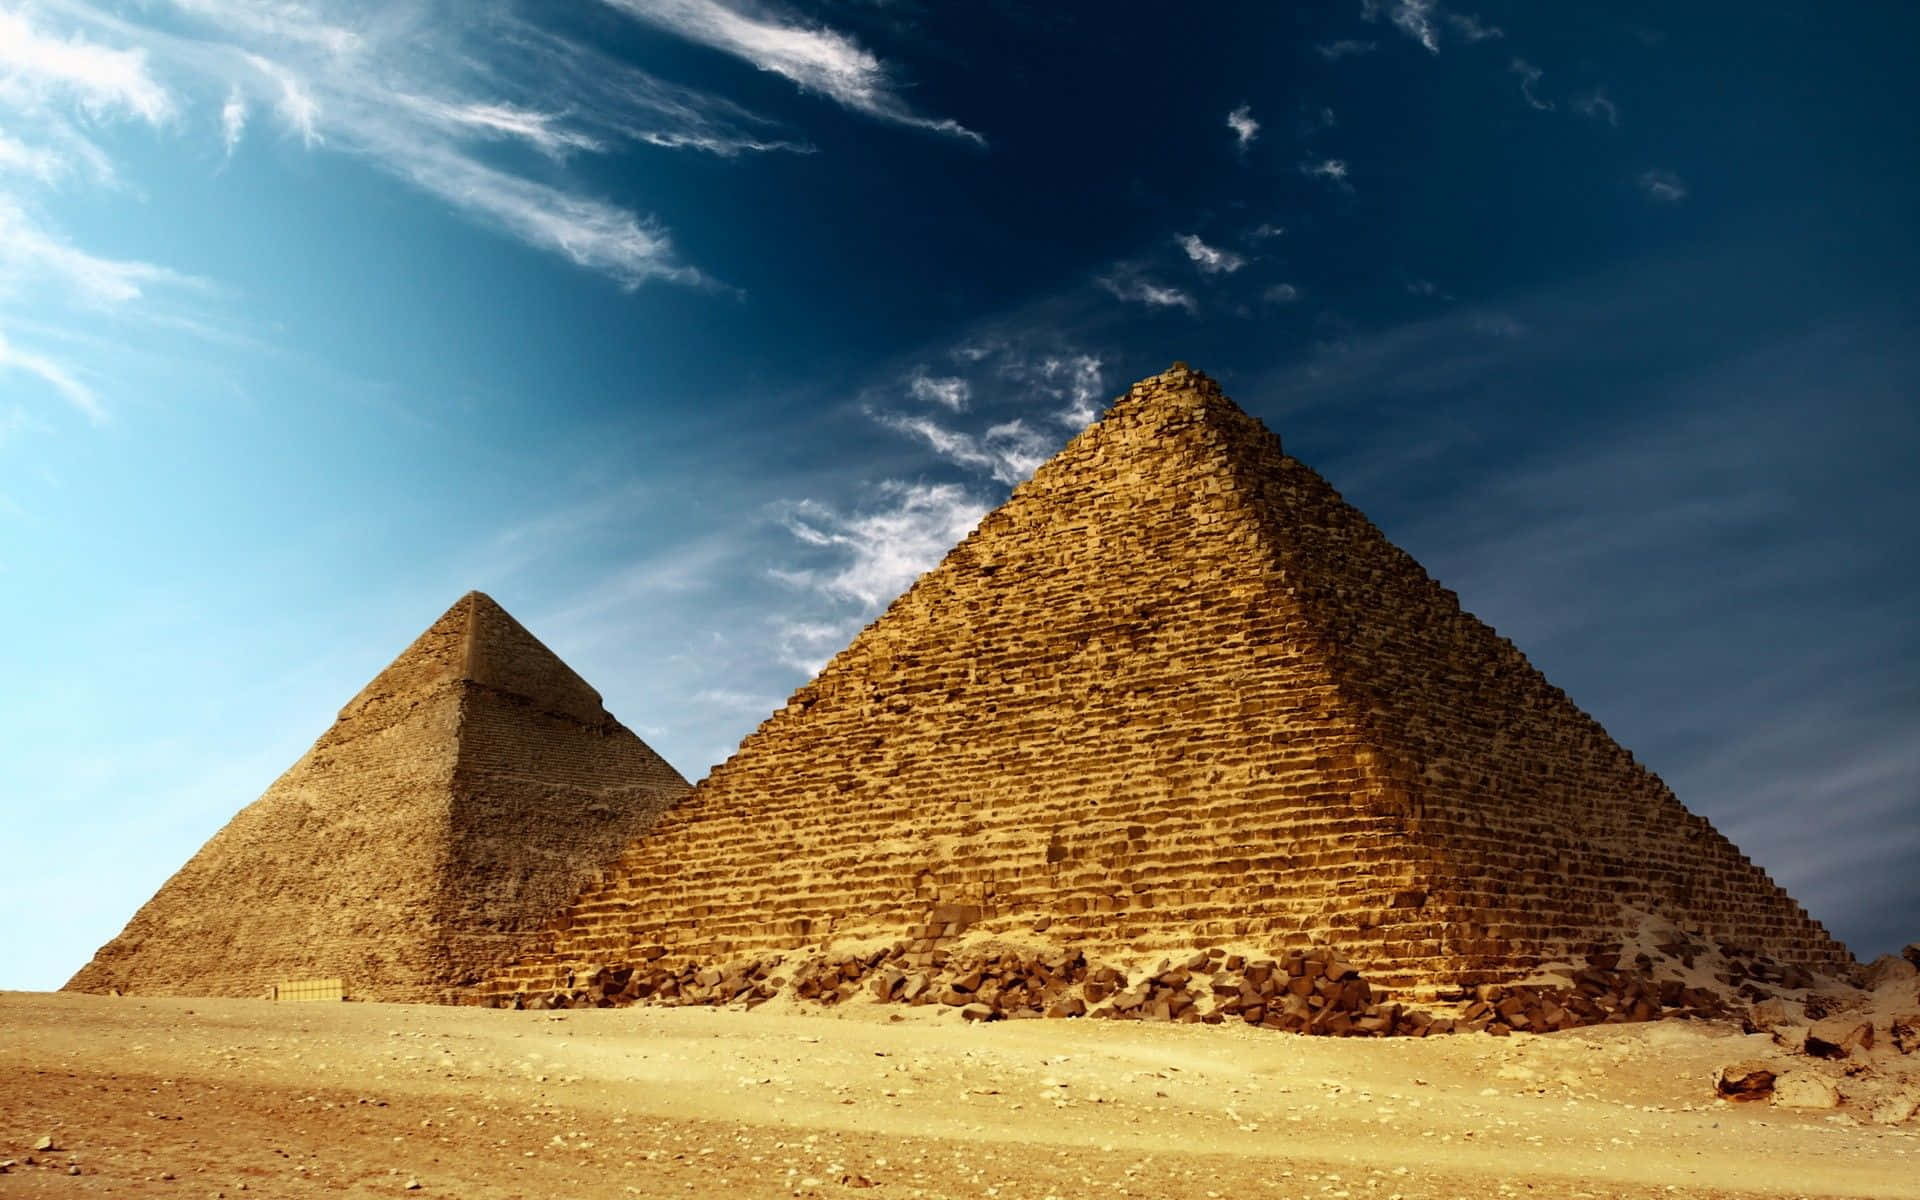 Vistapanoramica Delle Mozzafiato Piramidi Di Giza Al Tramonto.